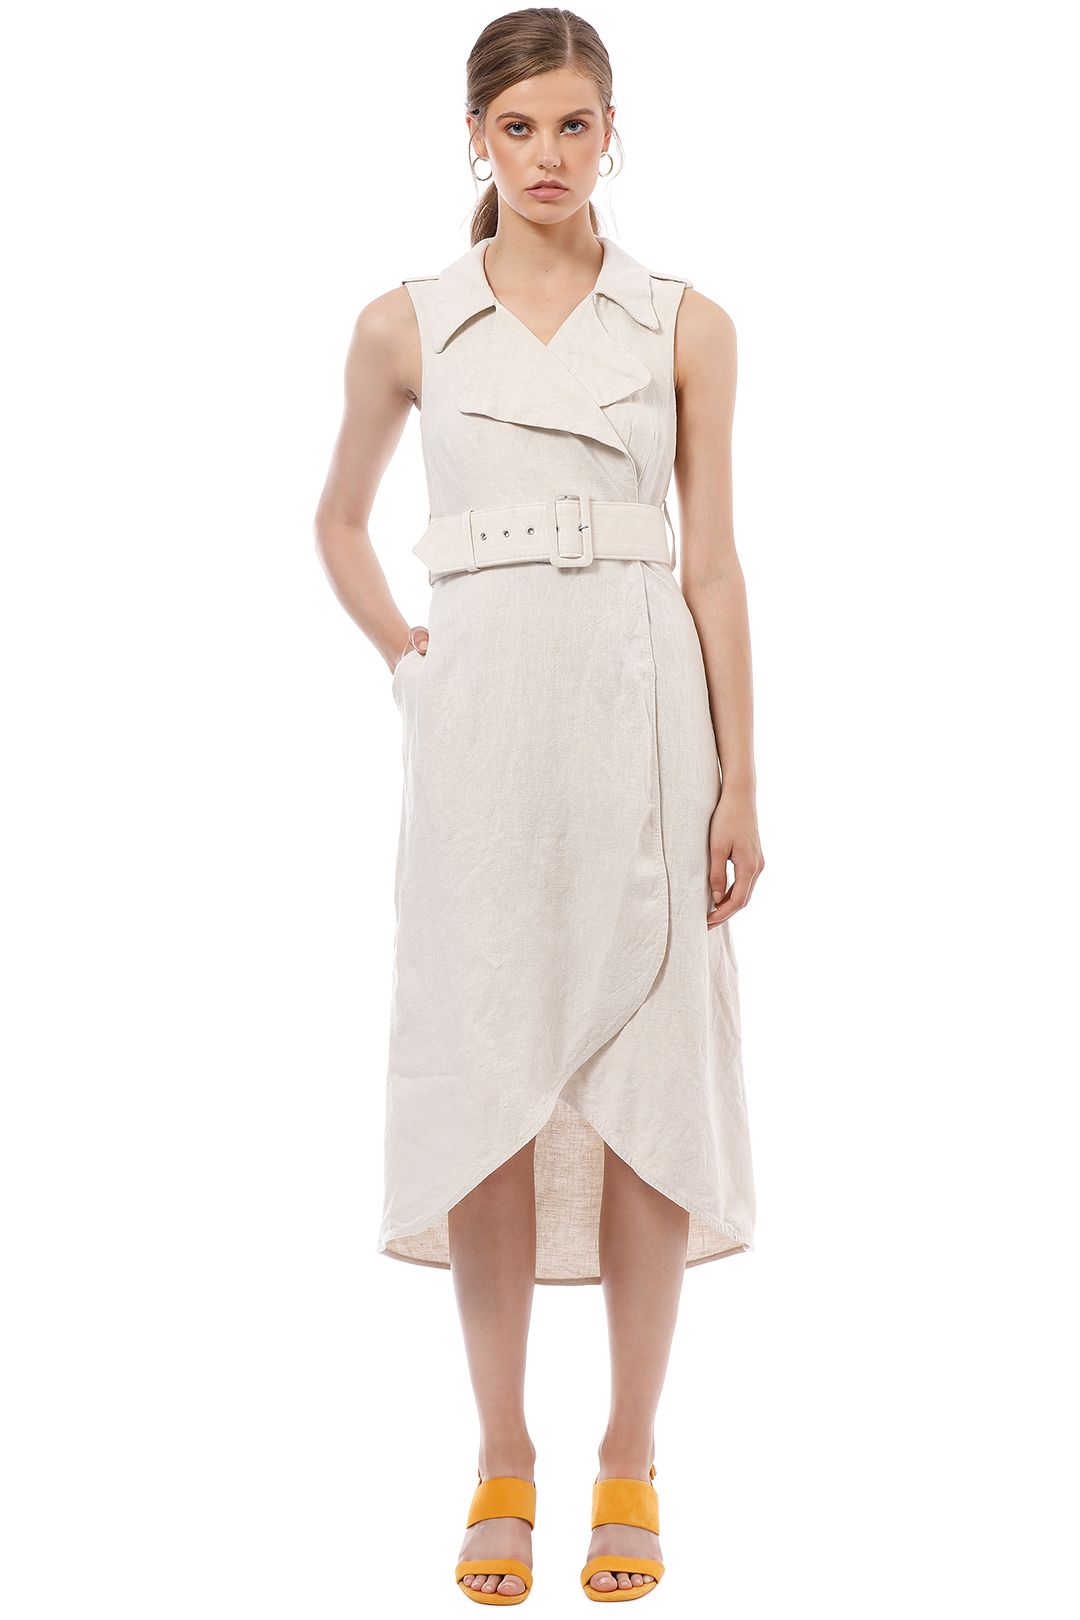 Shona Joy - Atticus Linen Sleeveless Trench Midi Dress - Cream - Front